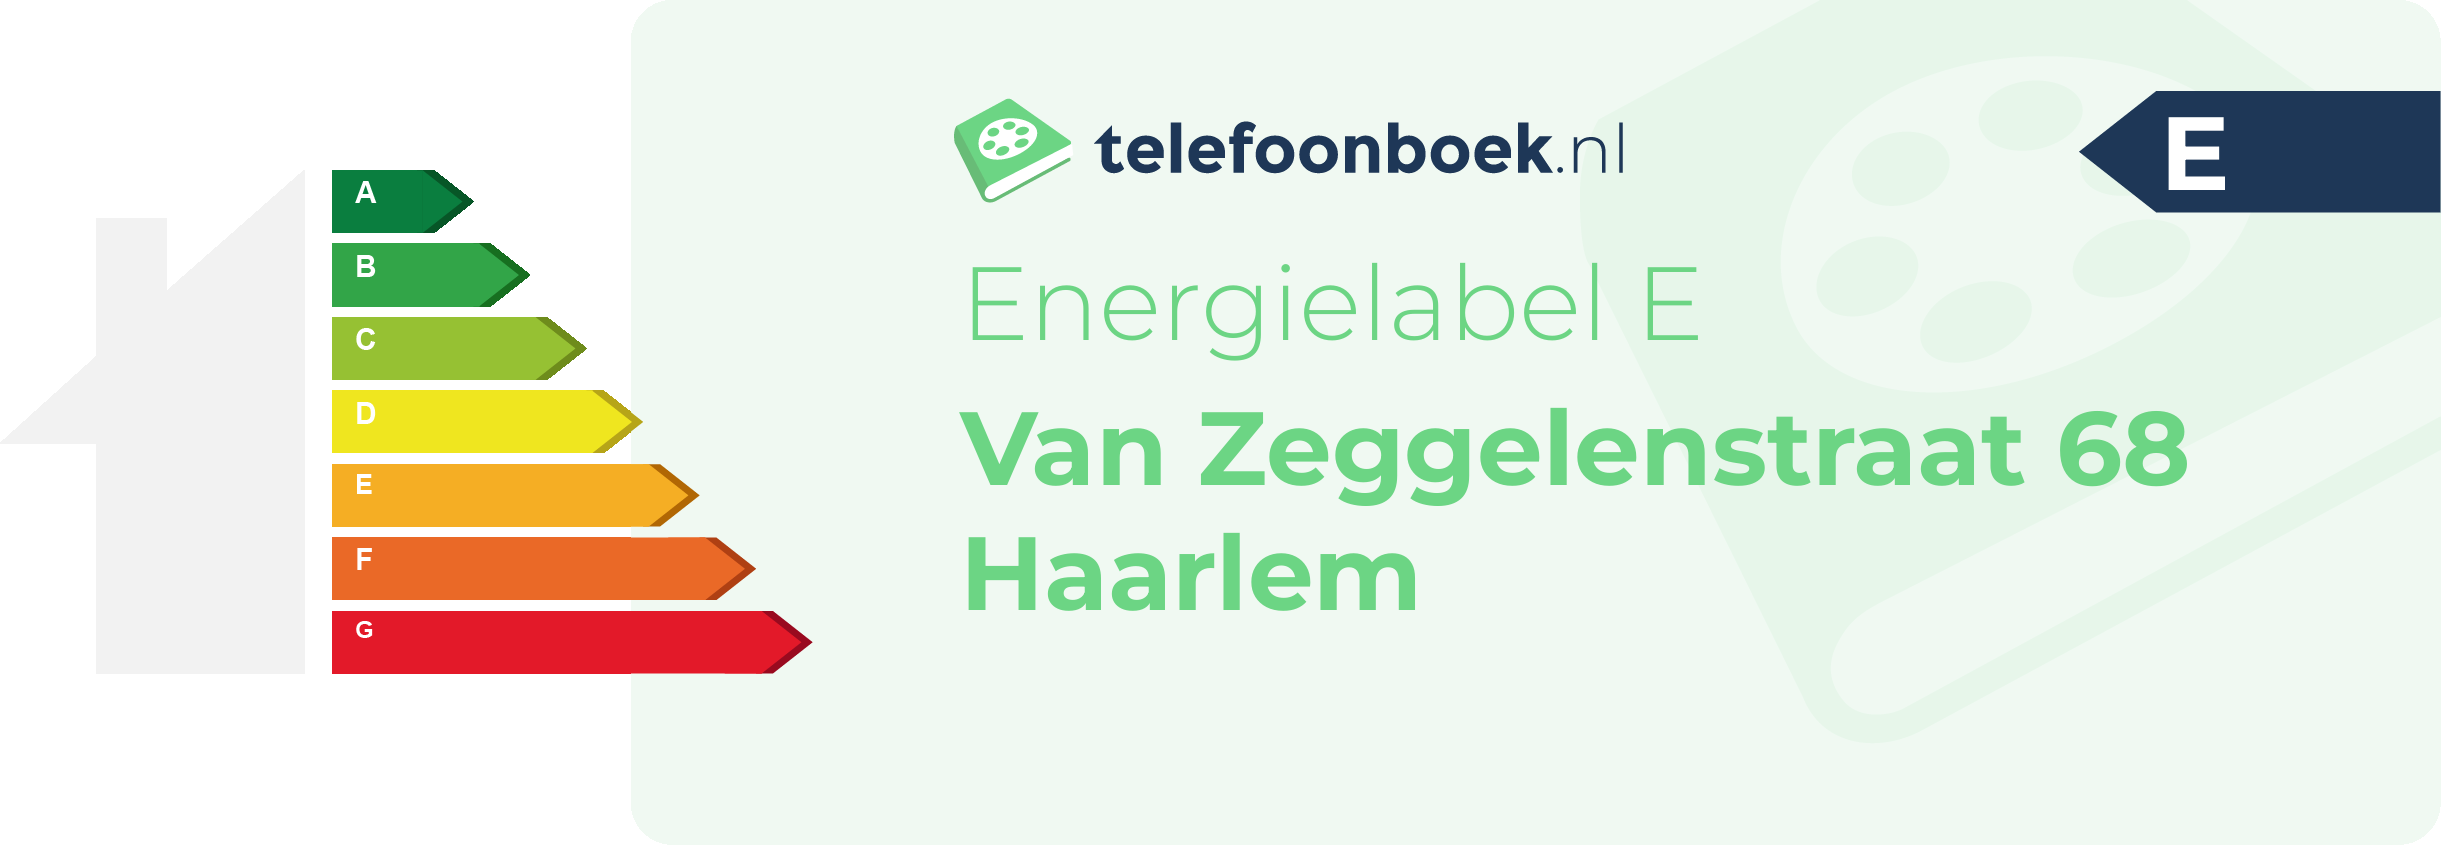 Energielabel Van Zeggelenstraat 68 Haarlem